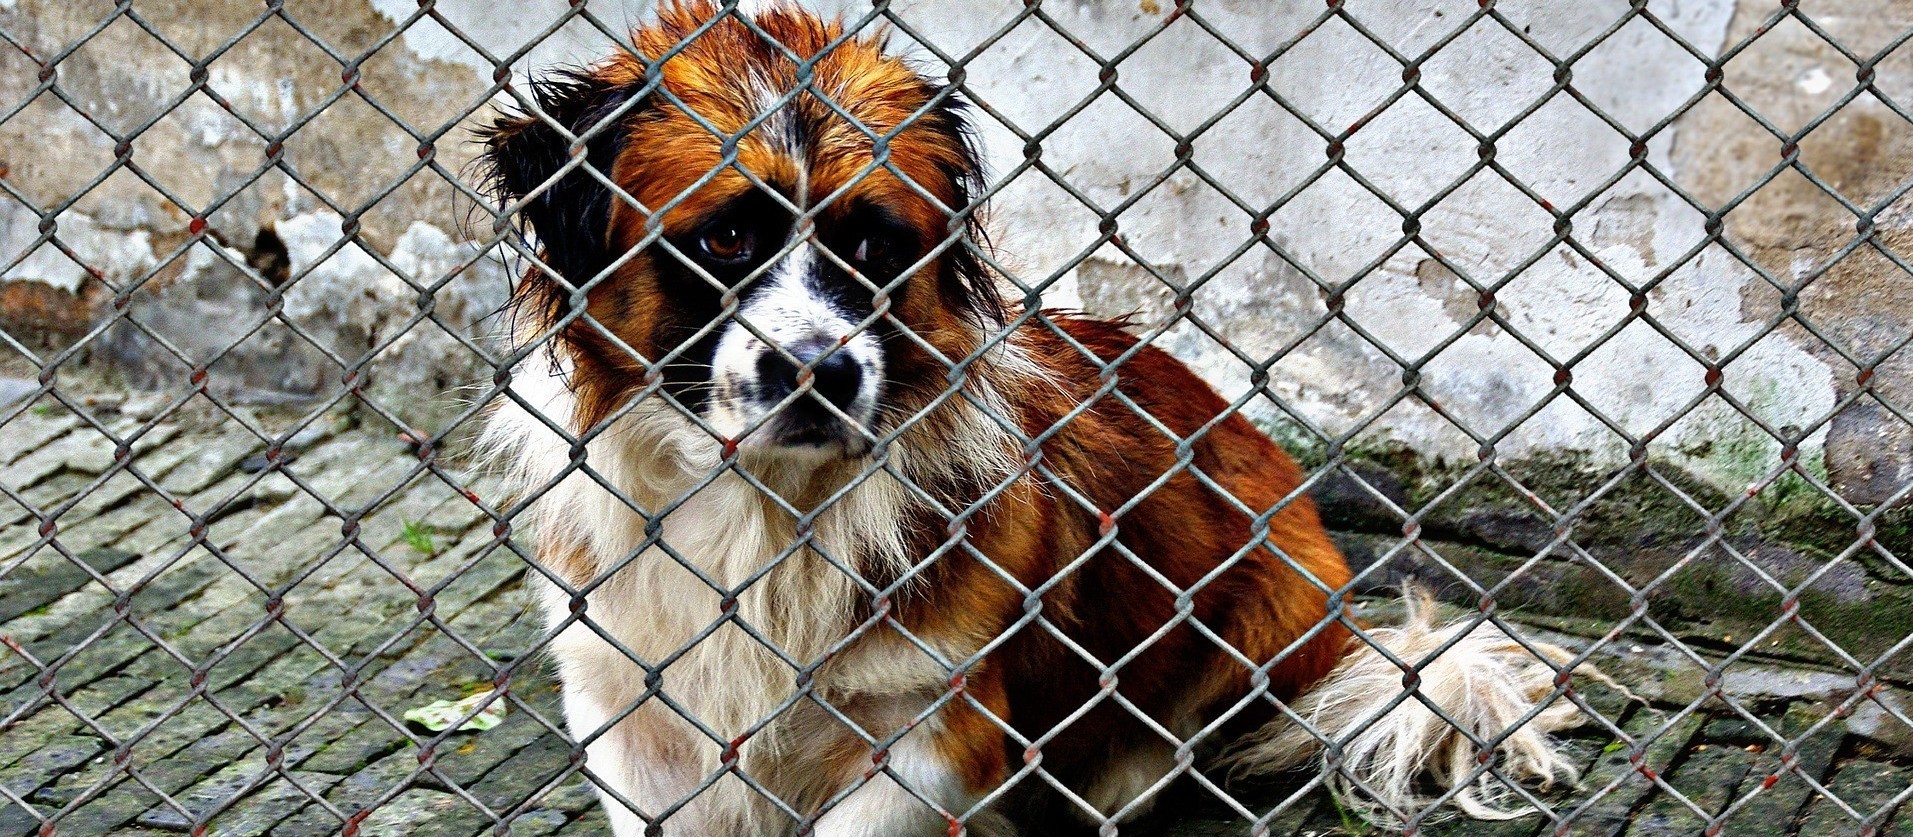 Projeto de lei propõe dobrar multa por maus-tratos a animais em Maringá